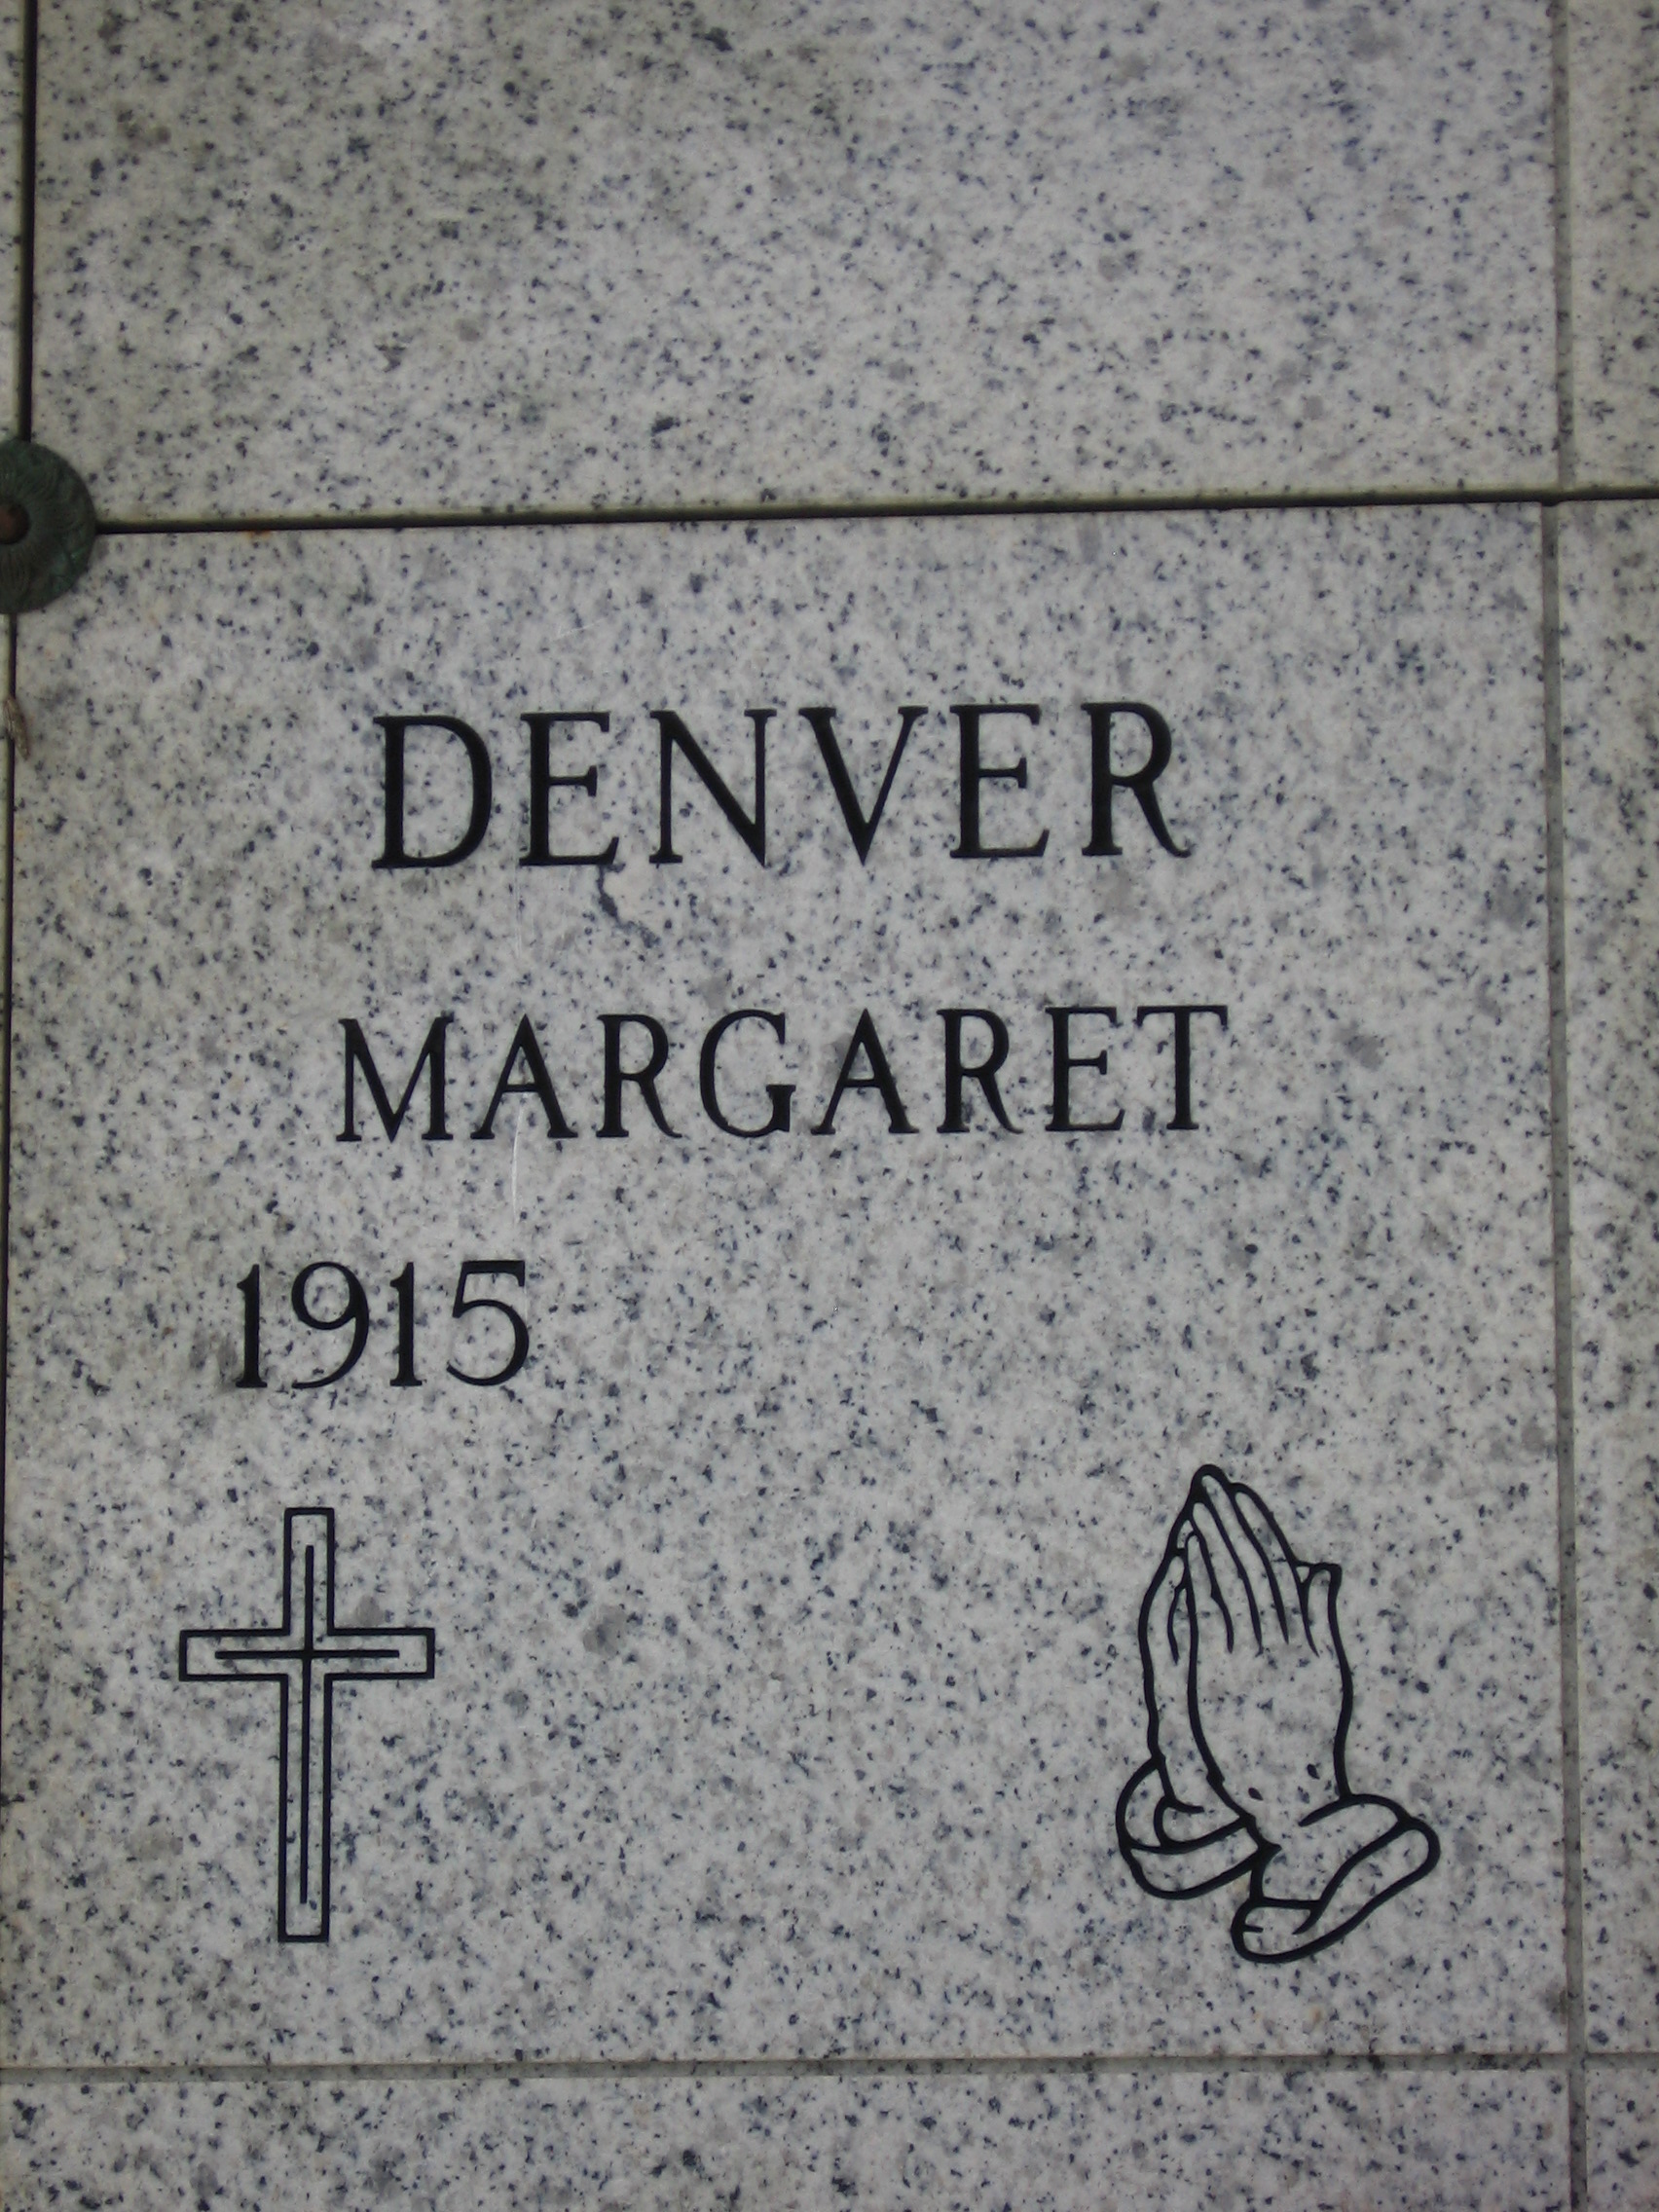 Margaret Denver